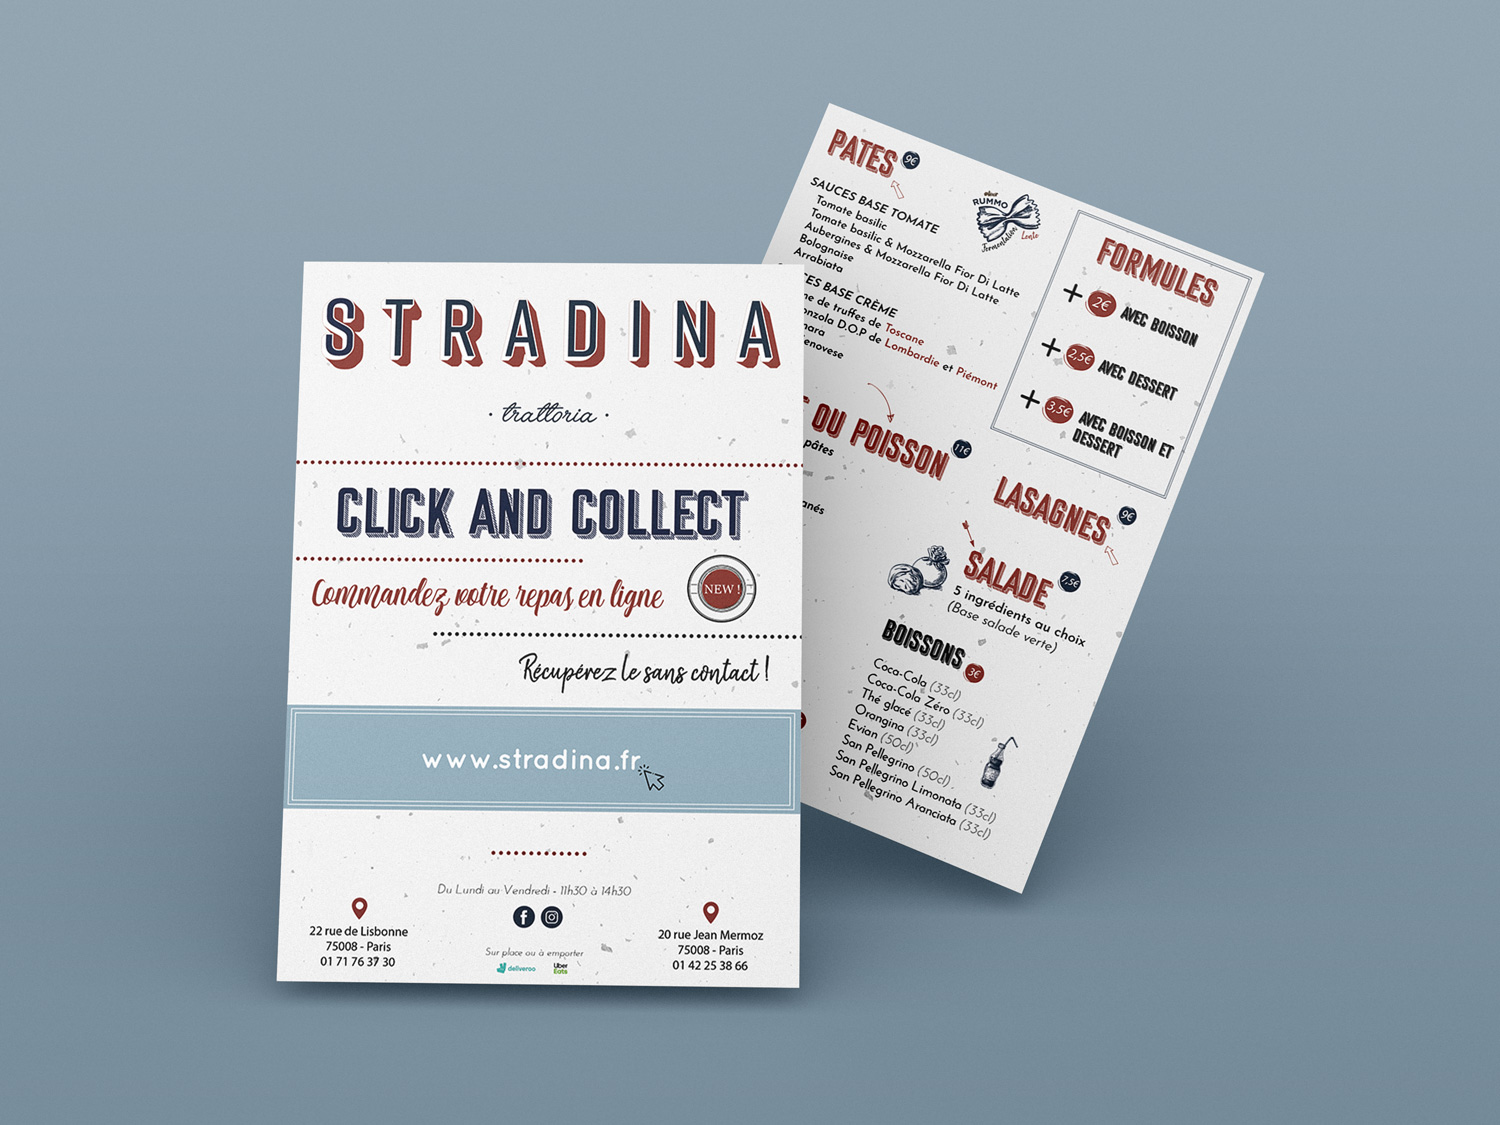 Flyer de l'entreprise Stradina, réalisé par l'agence digitale Pardalys.